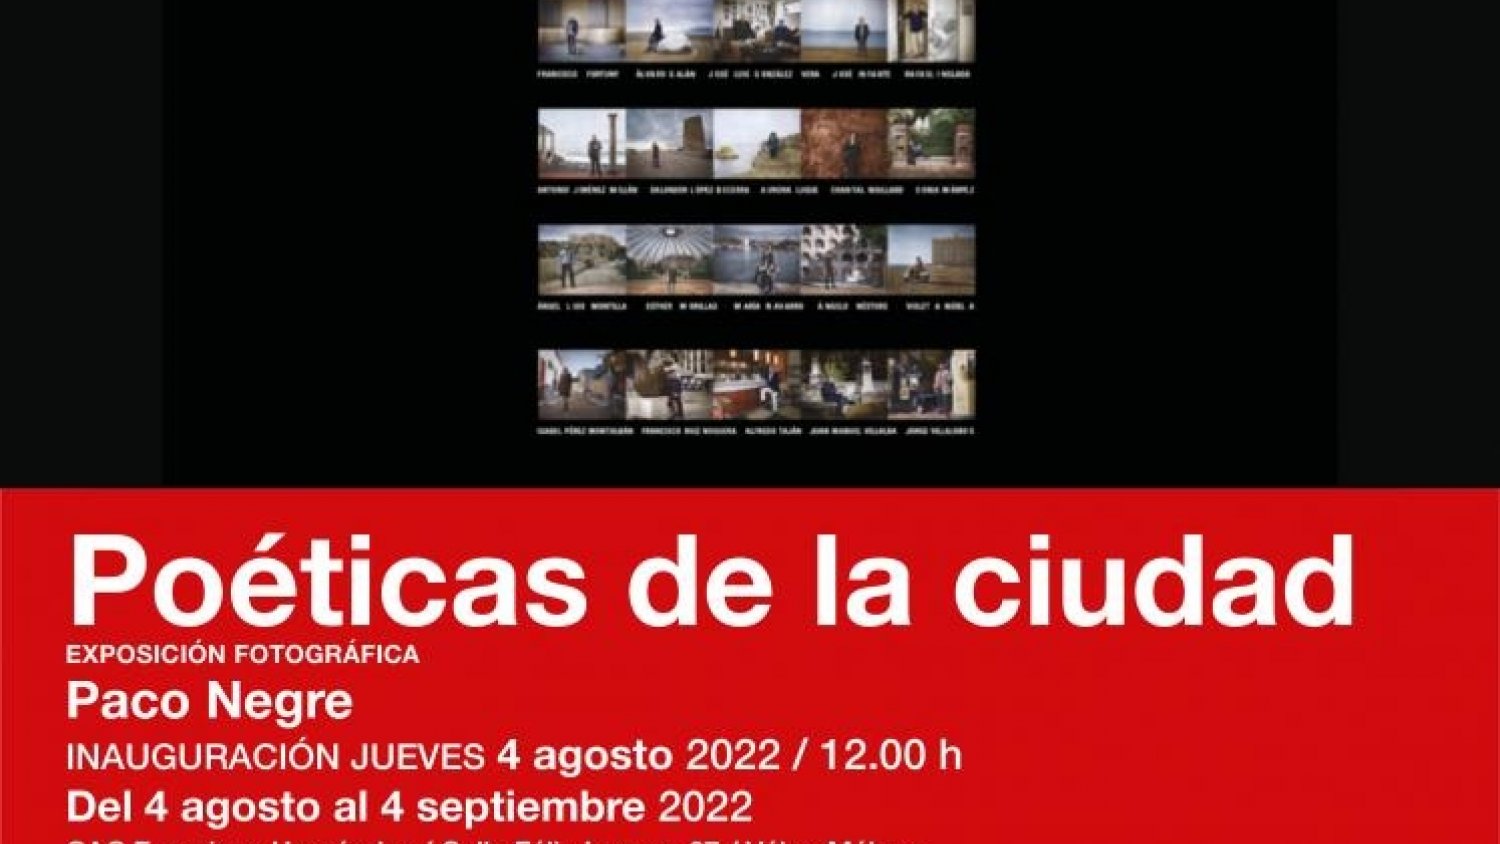 La exposición fotográfica 'Poéticas de la ciudad' de Paco Negre llega a Vélez-Málaga